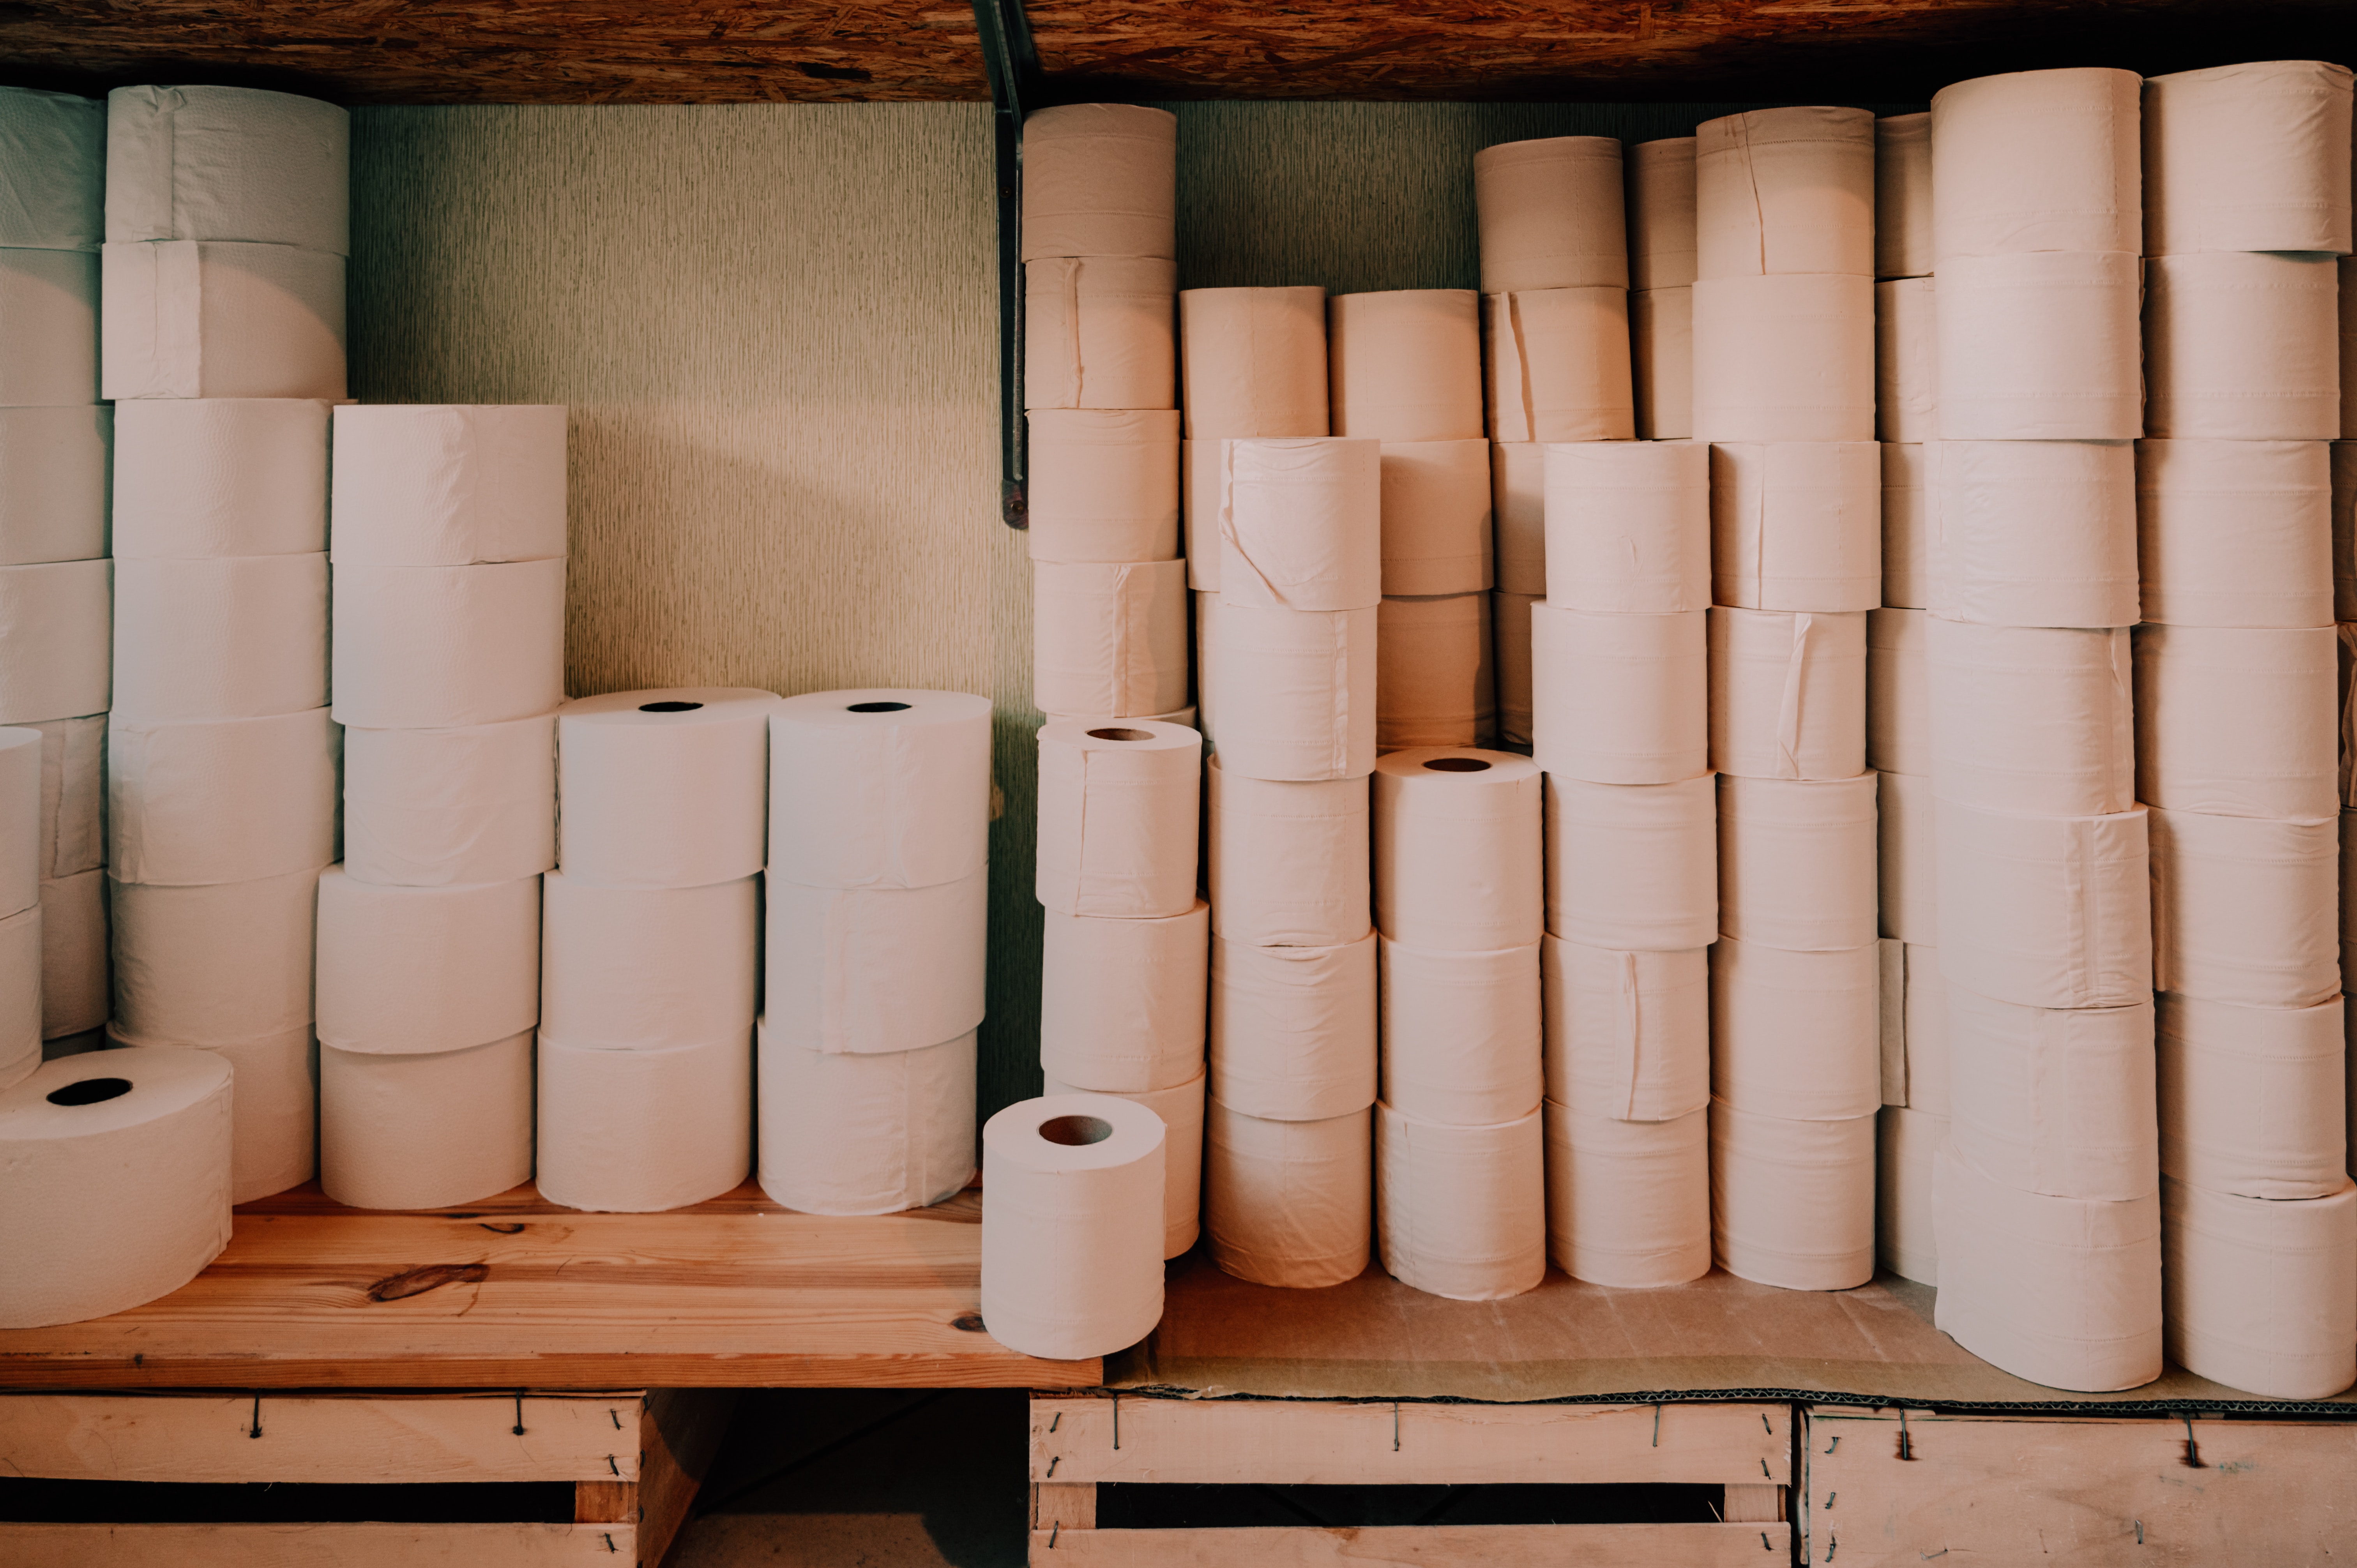 Rollos de papel de seda blanco. | Fuente: Pexels